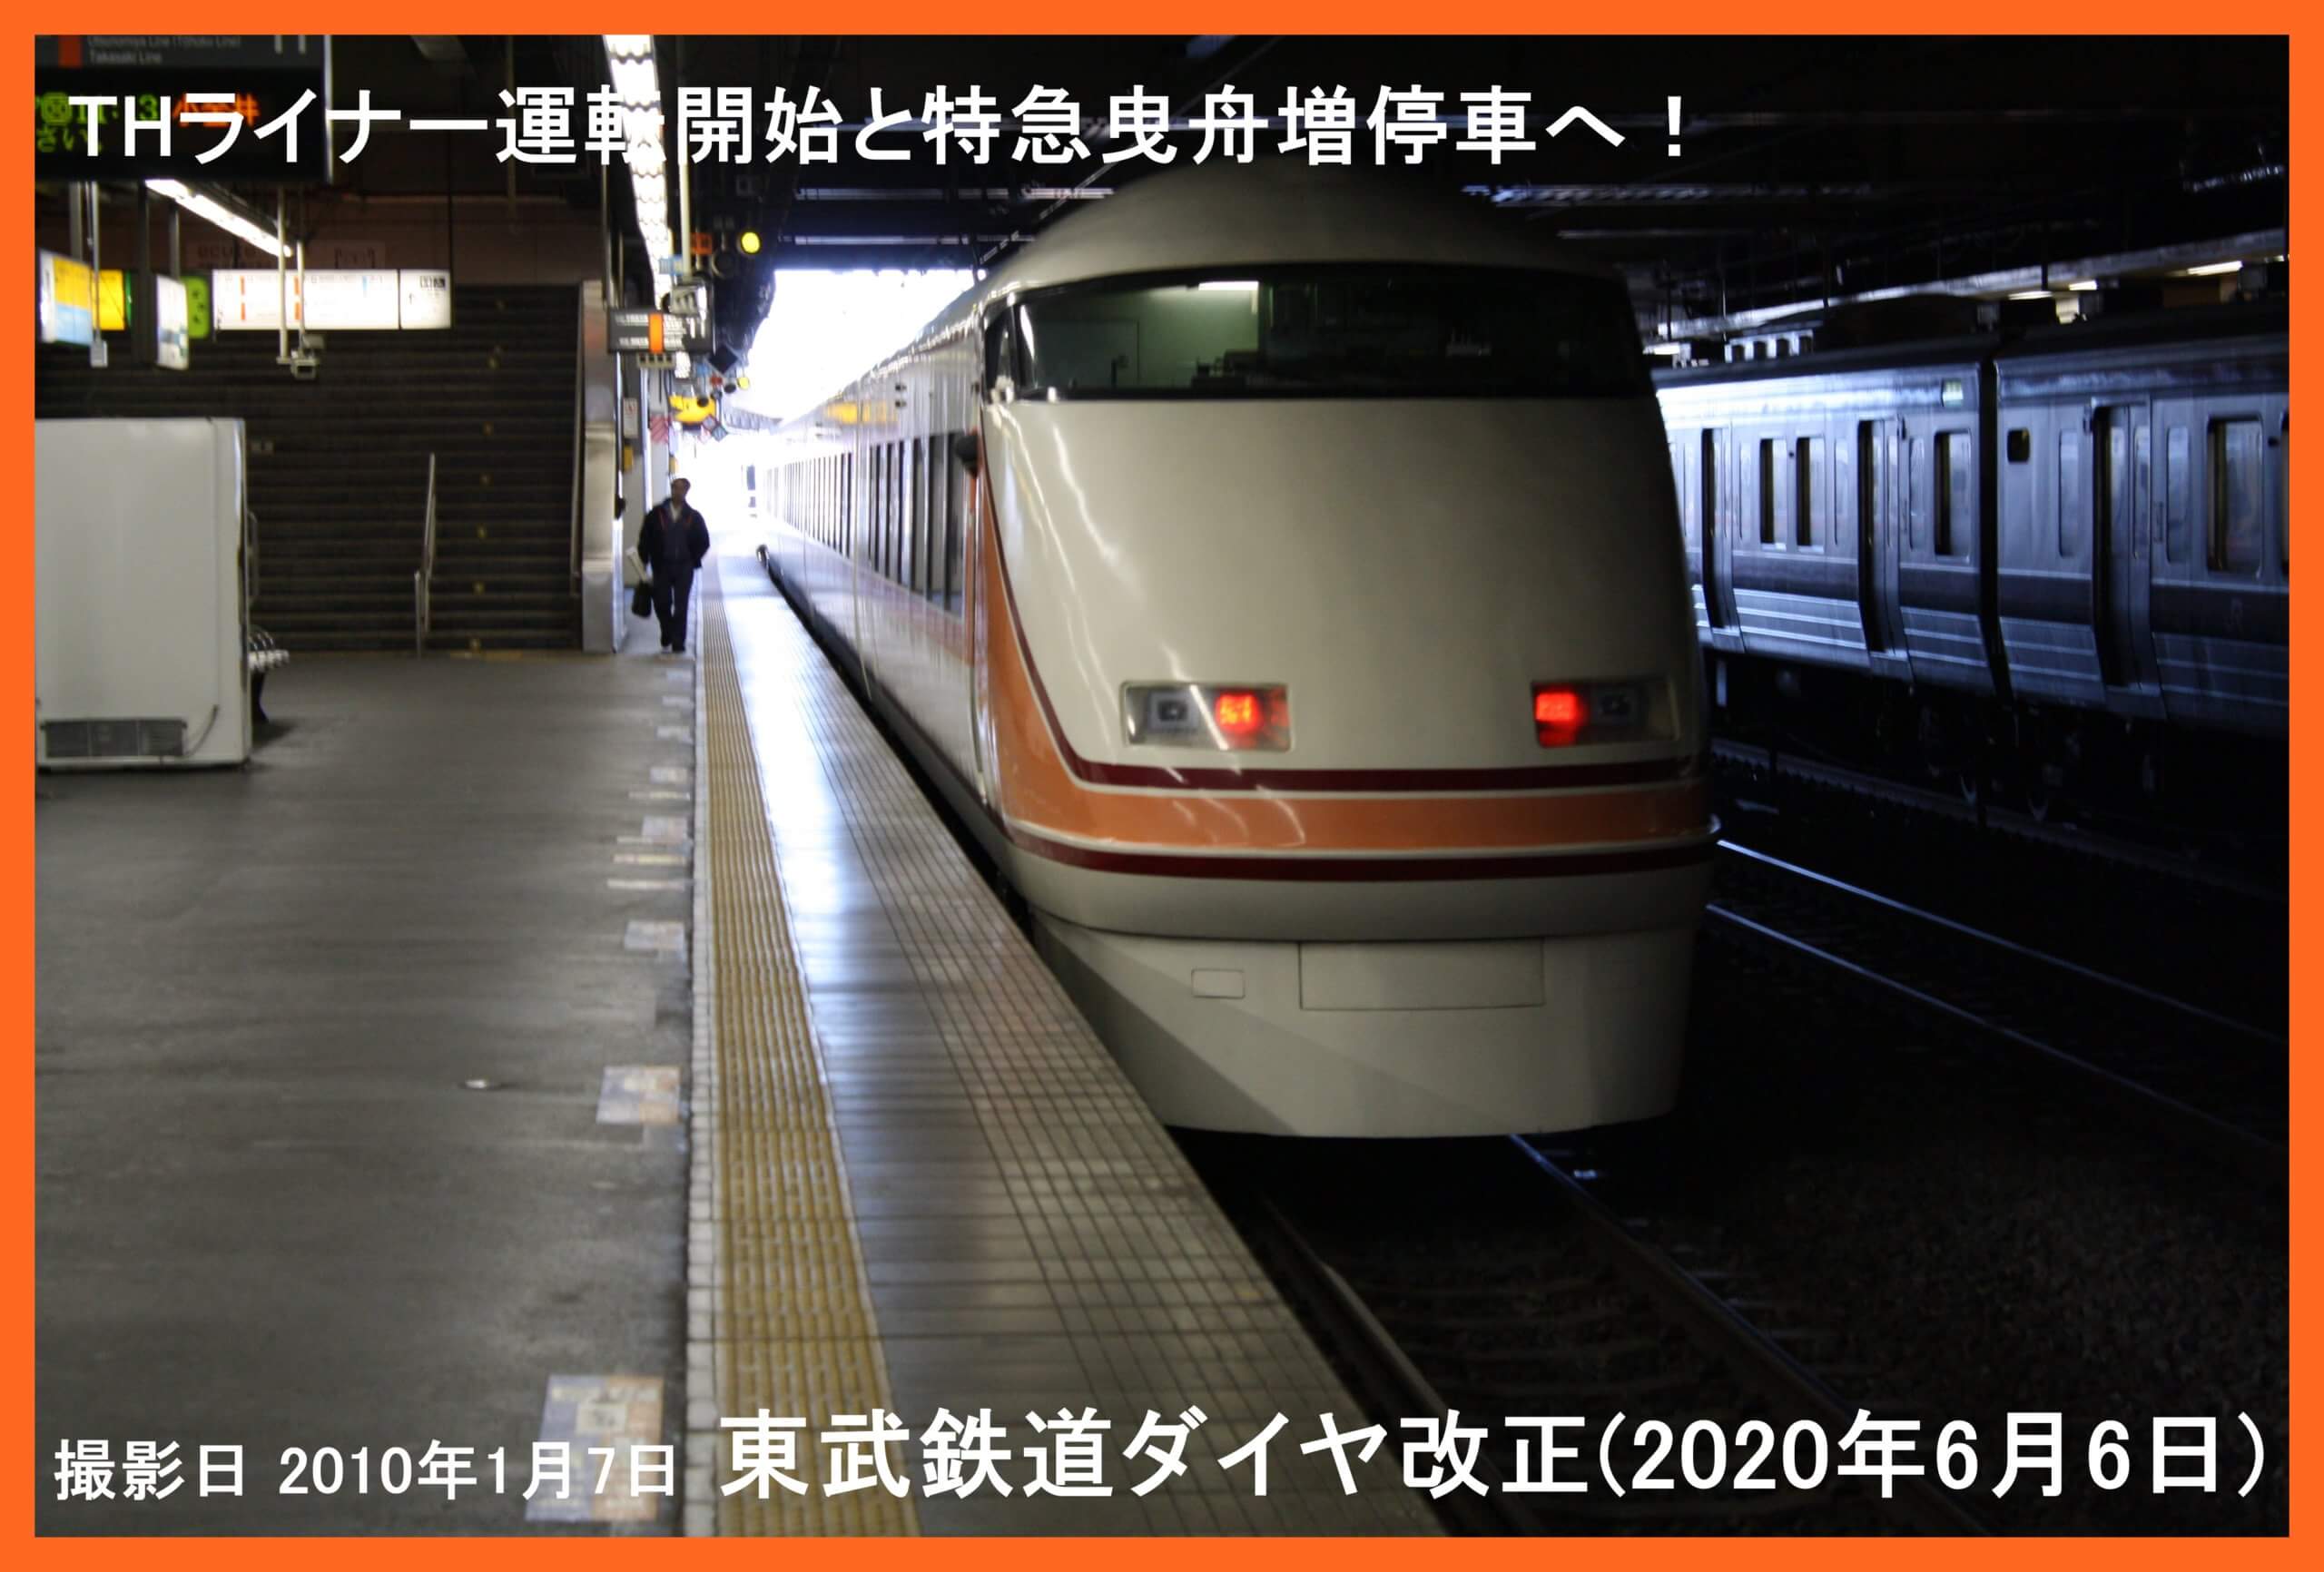 改正 2020 東武 鉄道 ダイヤ 2020年6月ダイヤ改正で、特急「しもつけ」運行取りやめ